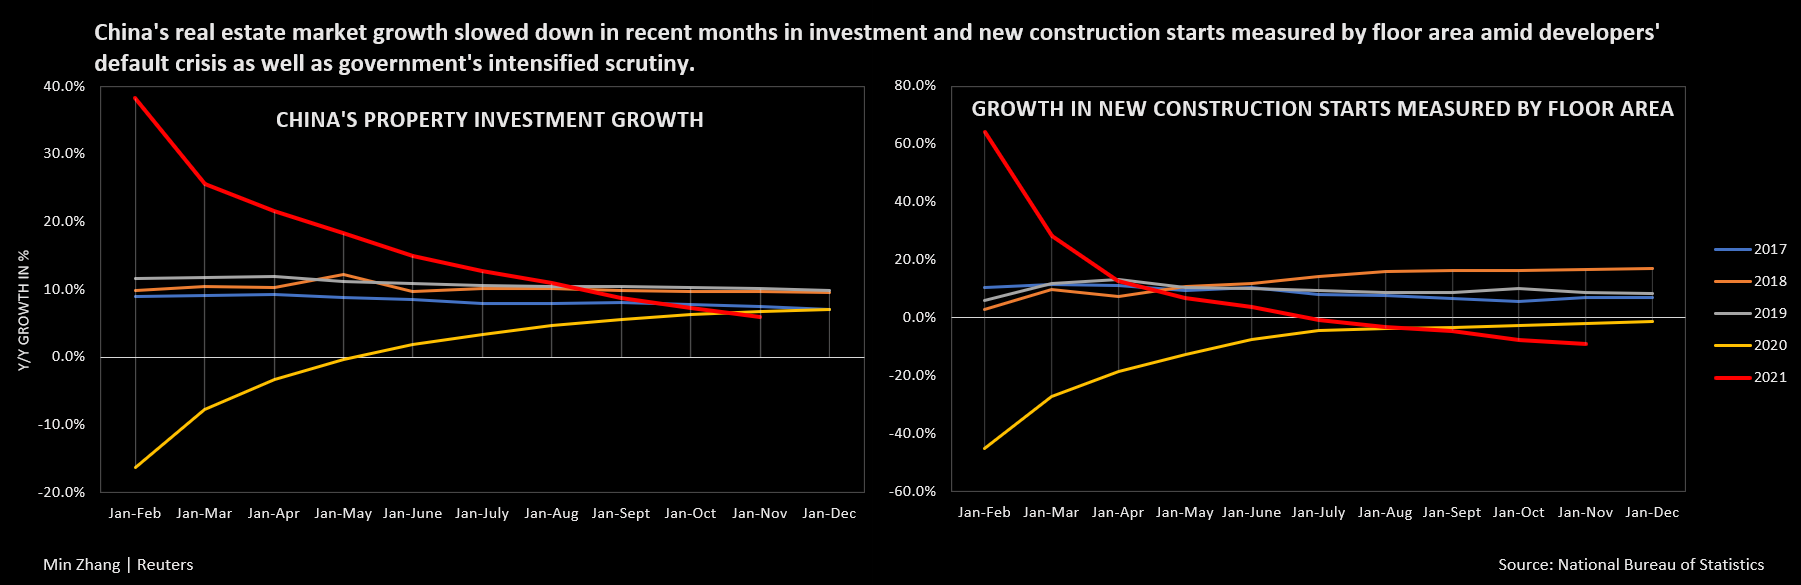 El crecimiento de la inversión inmobiliaria y de las nuevas construcciones de China, medido por superficie, ha disminuido en los últimos meses debido a la crisis de incumplimiento y los controles gubernamentales.